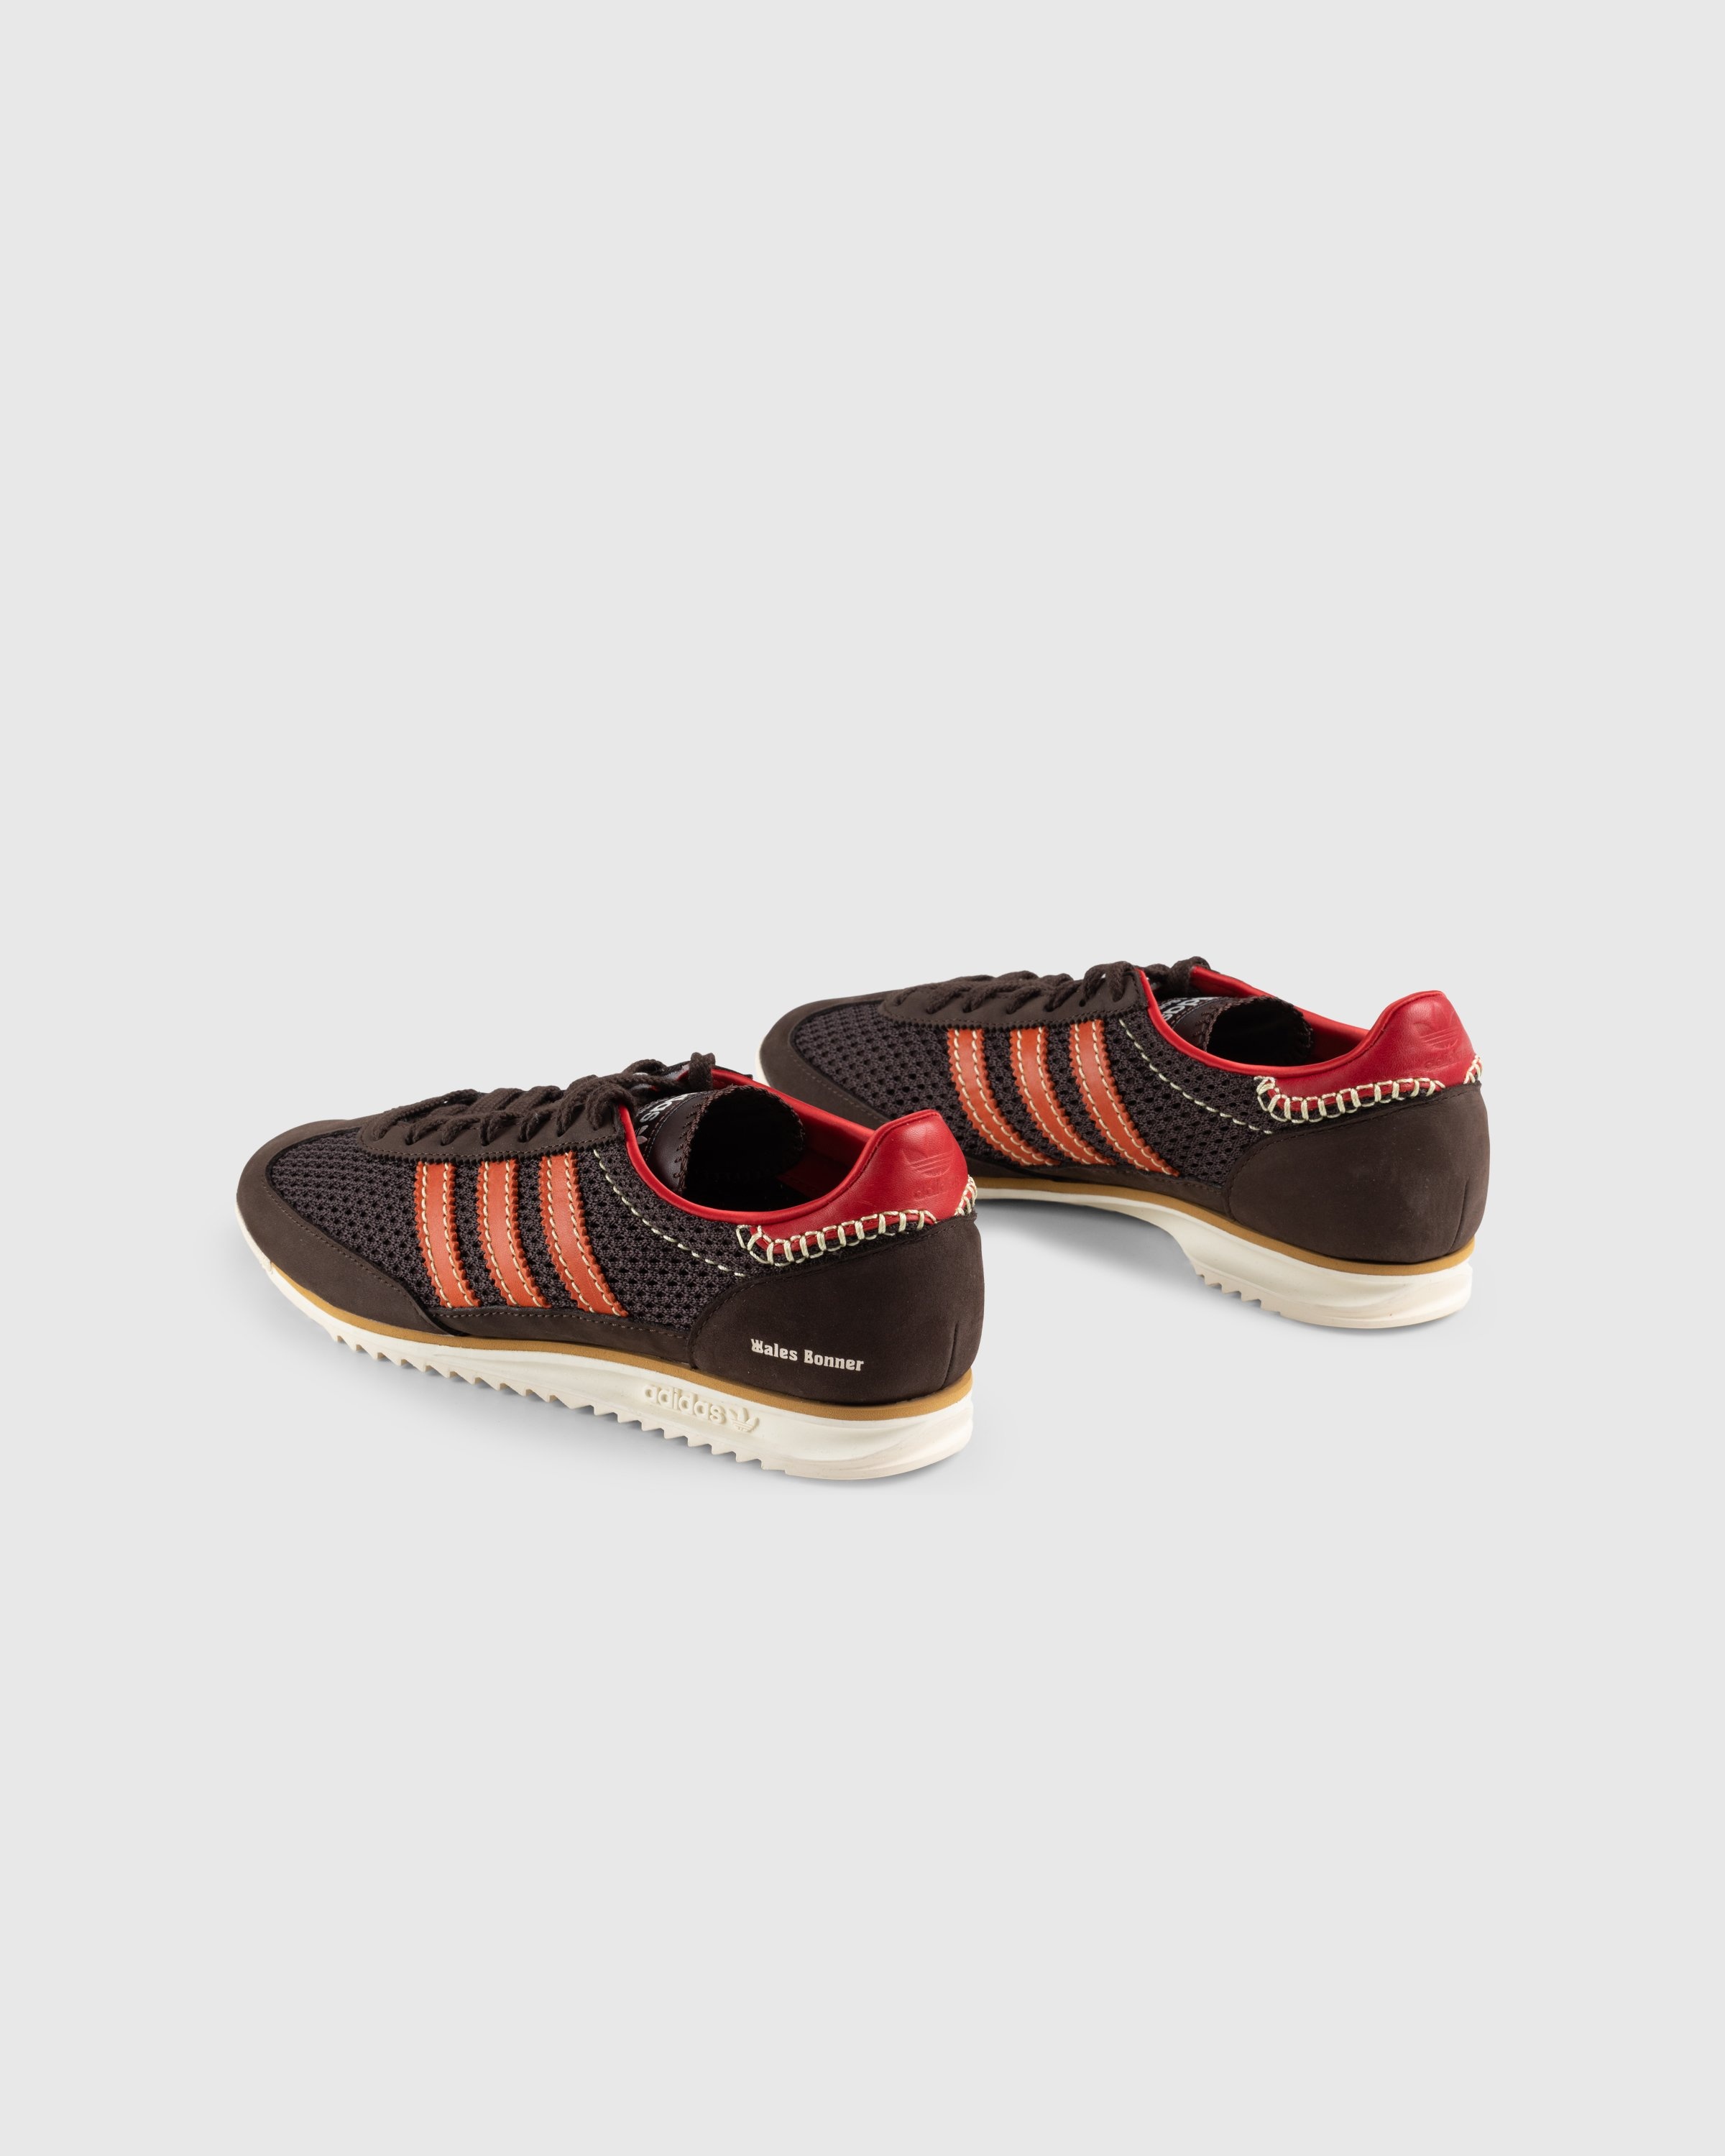 Adidas x Wales Bonner – SL72 Knit Dark Brown - Sneakers - Brown - Image 4